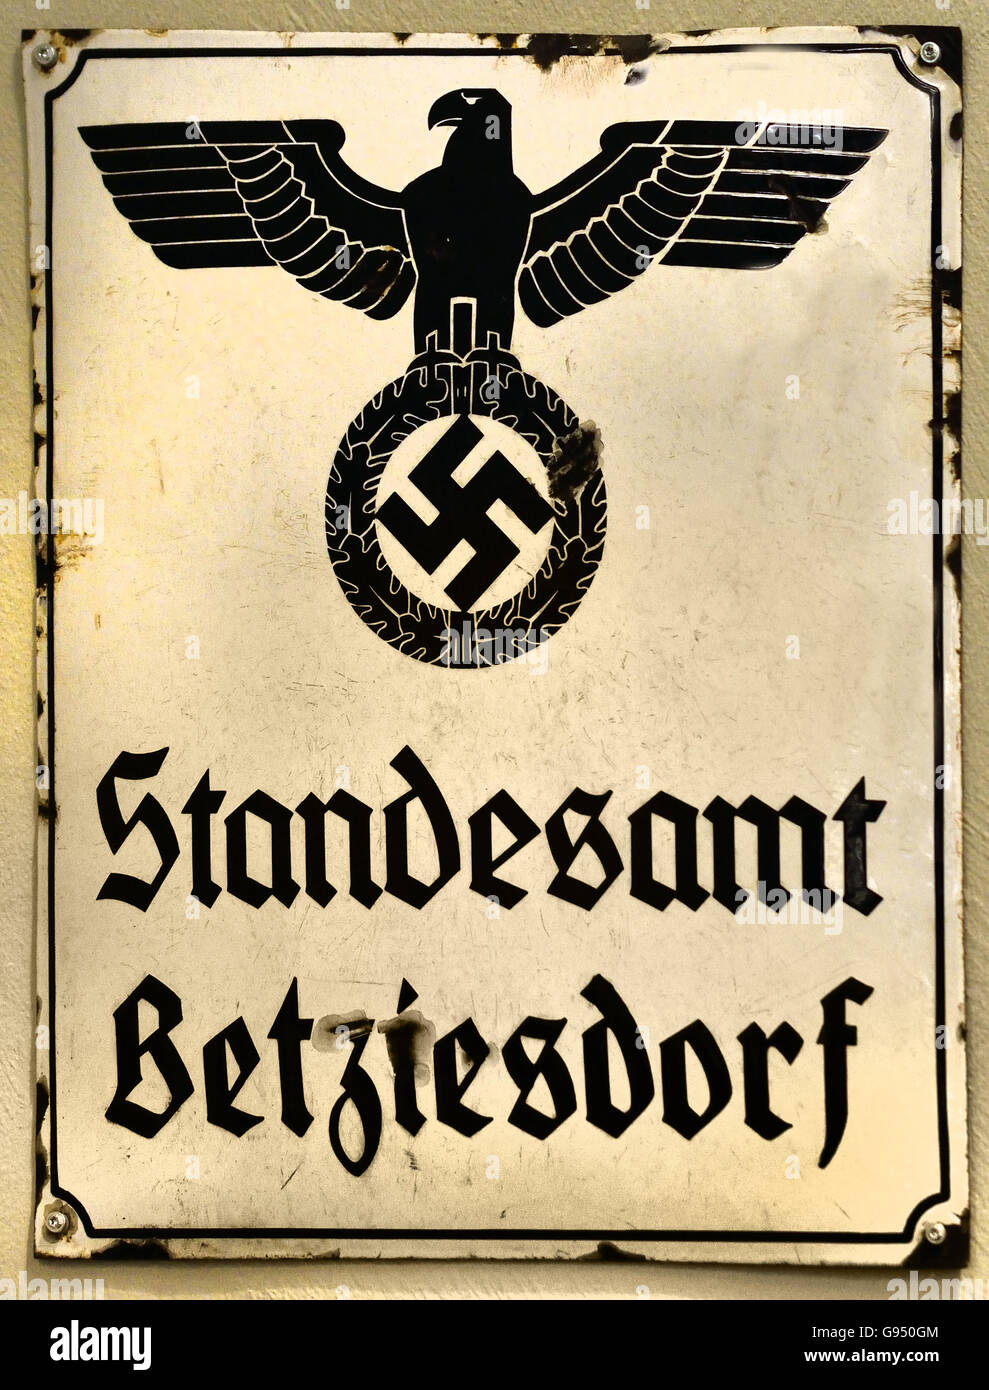 Standesamt Betzdorf - Standesamt Betzdorf Zeichen Berlin Nazi Deutschland Hakenkreuz Stockfoto